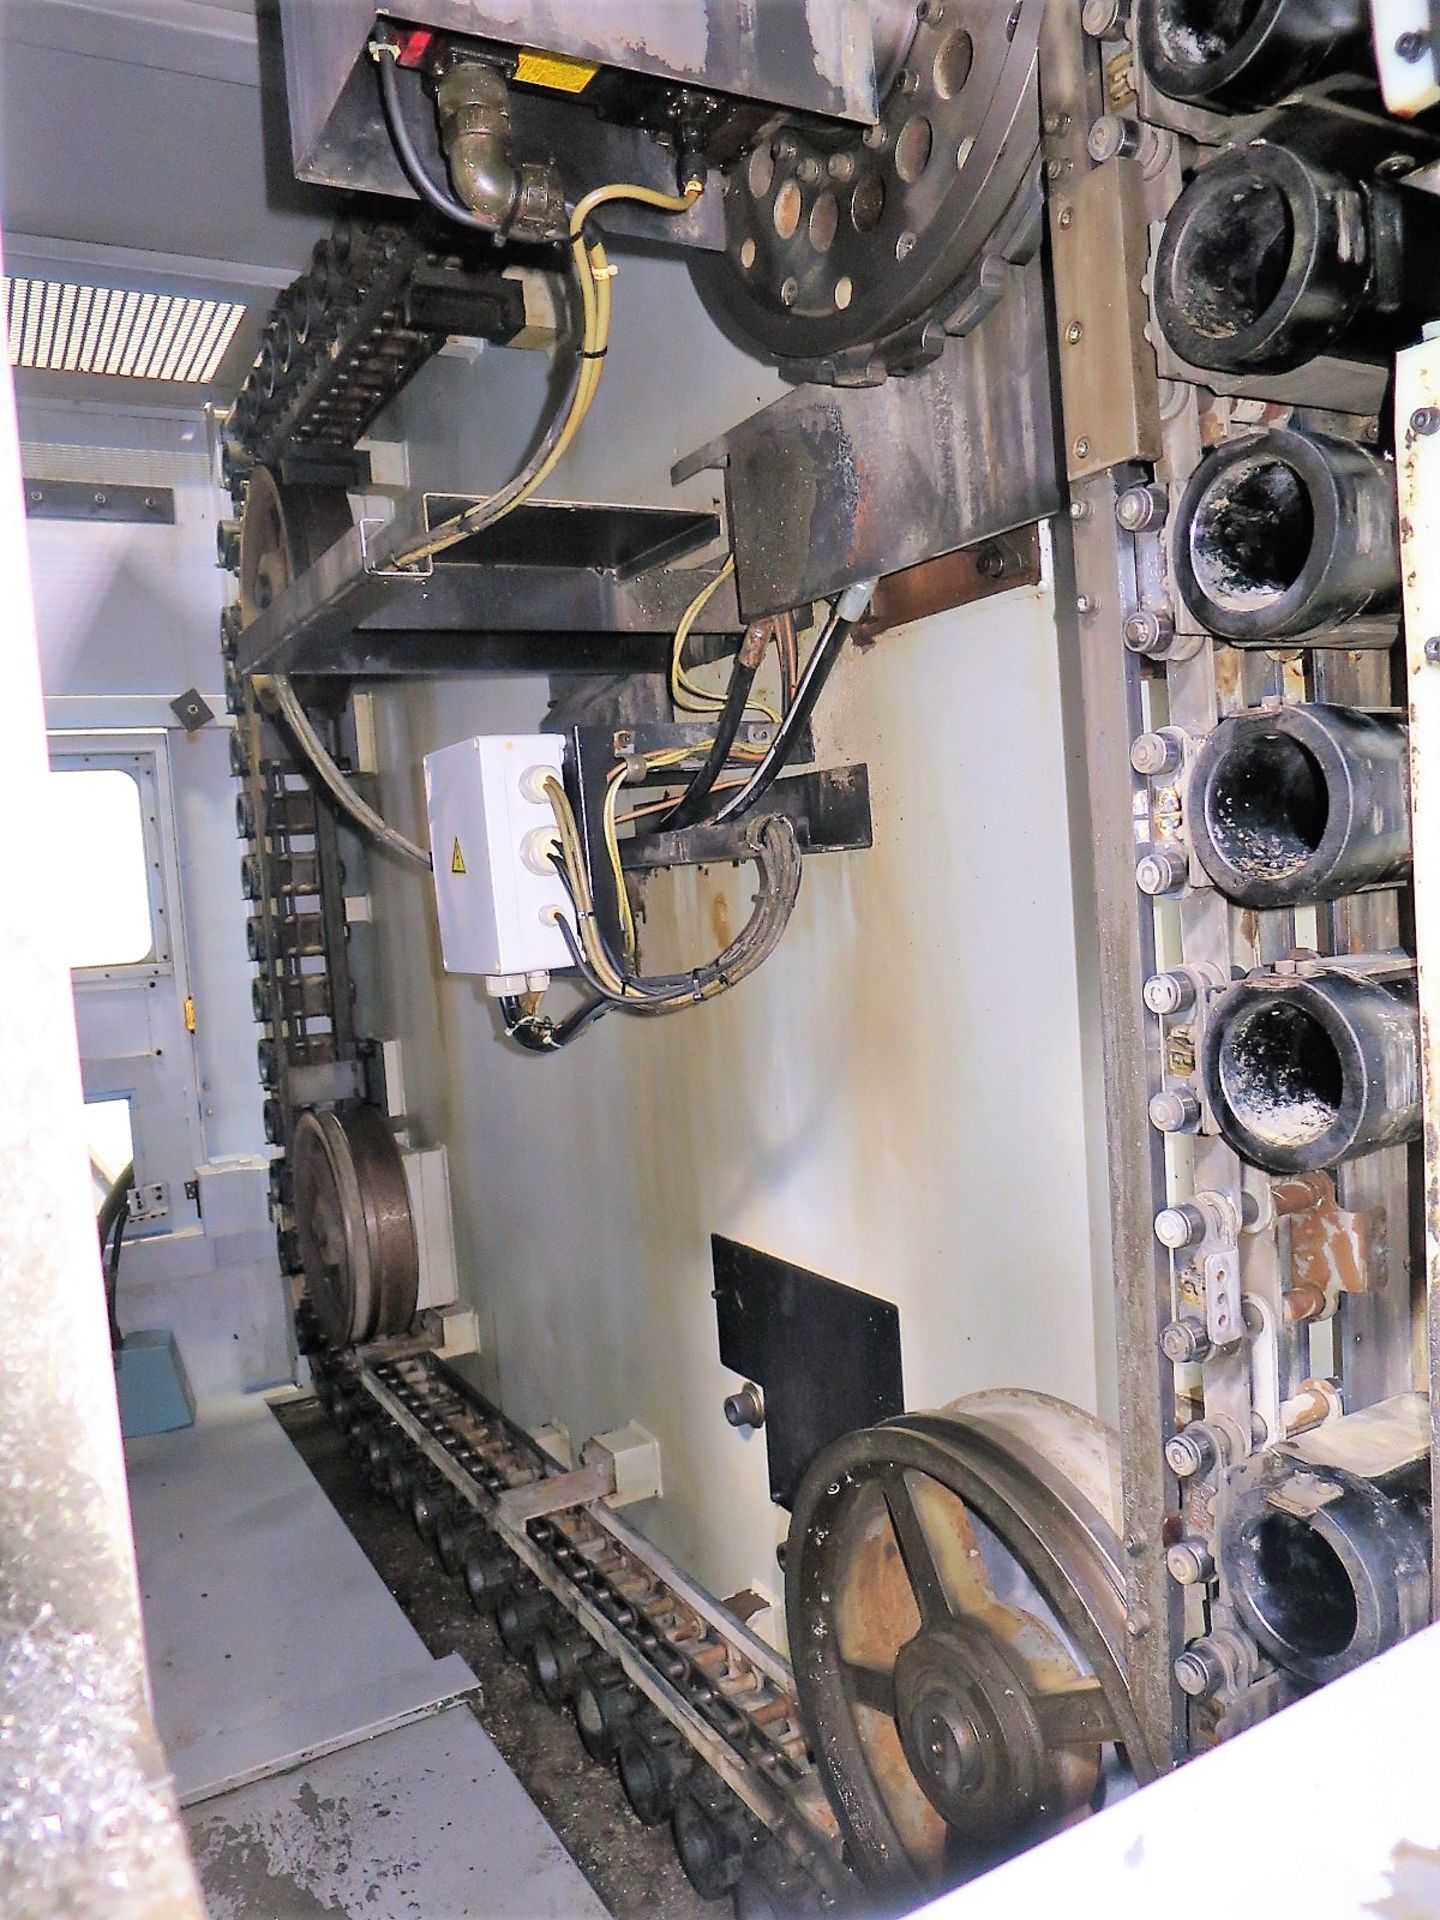 2005 MORI SEIKI NH5000/50 CNC HORIZONTAL MACHINING CENTER, S/N NH501EC0826 - Image 8 of 9